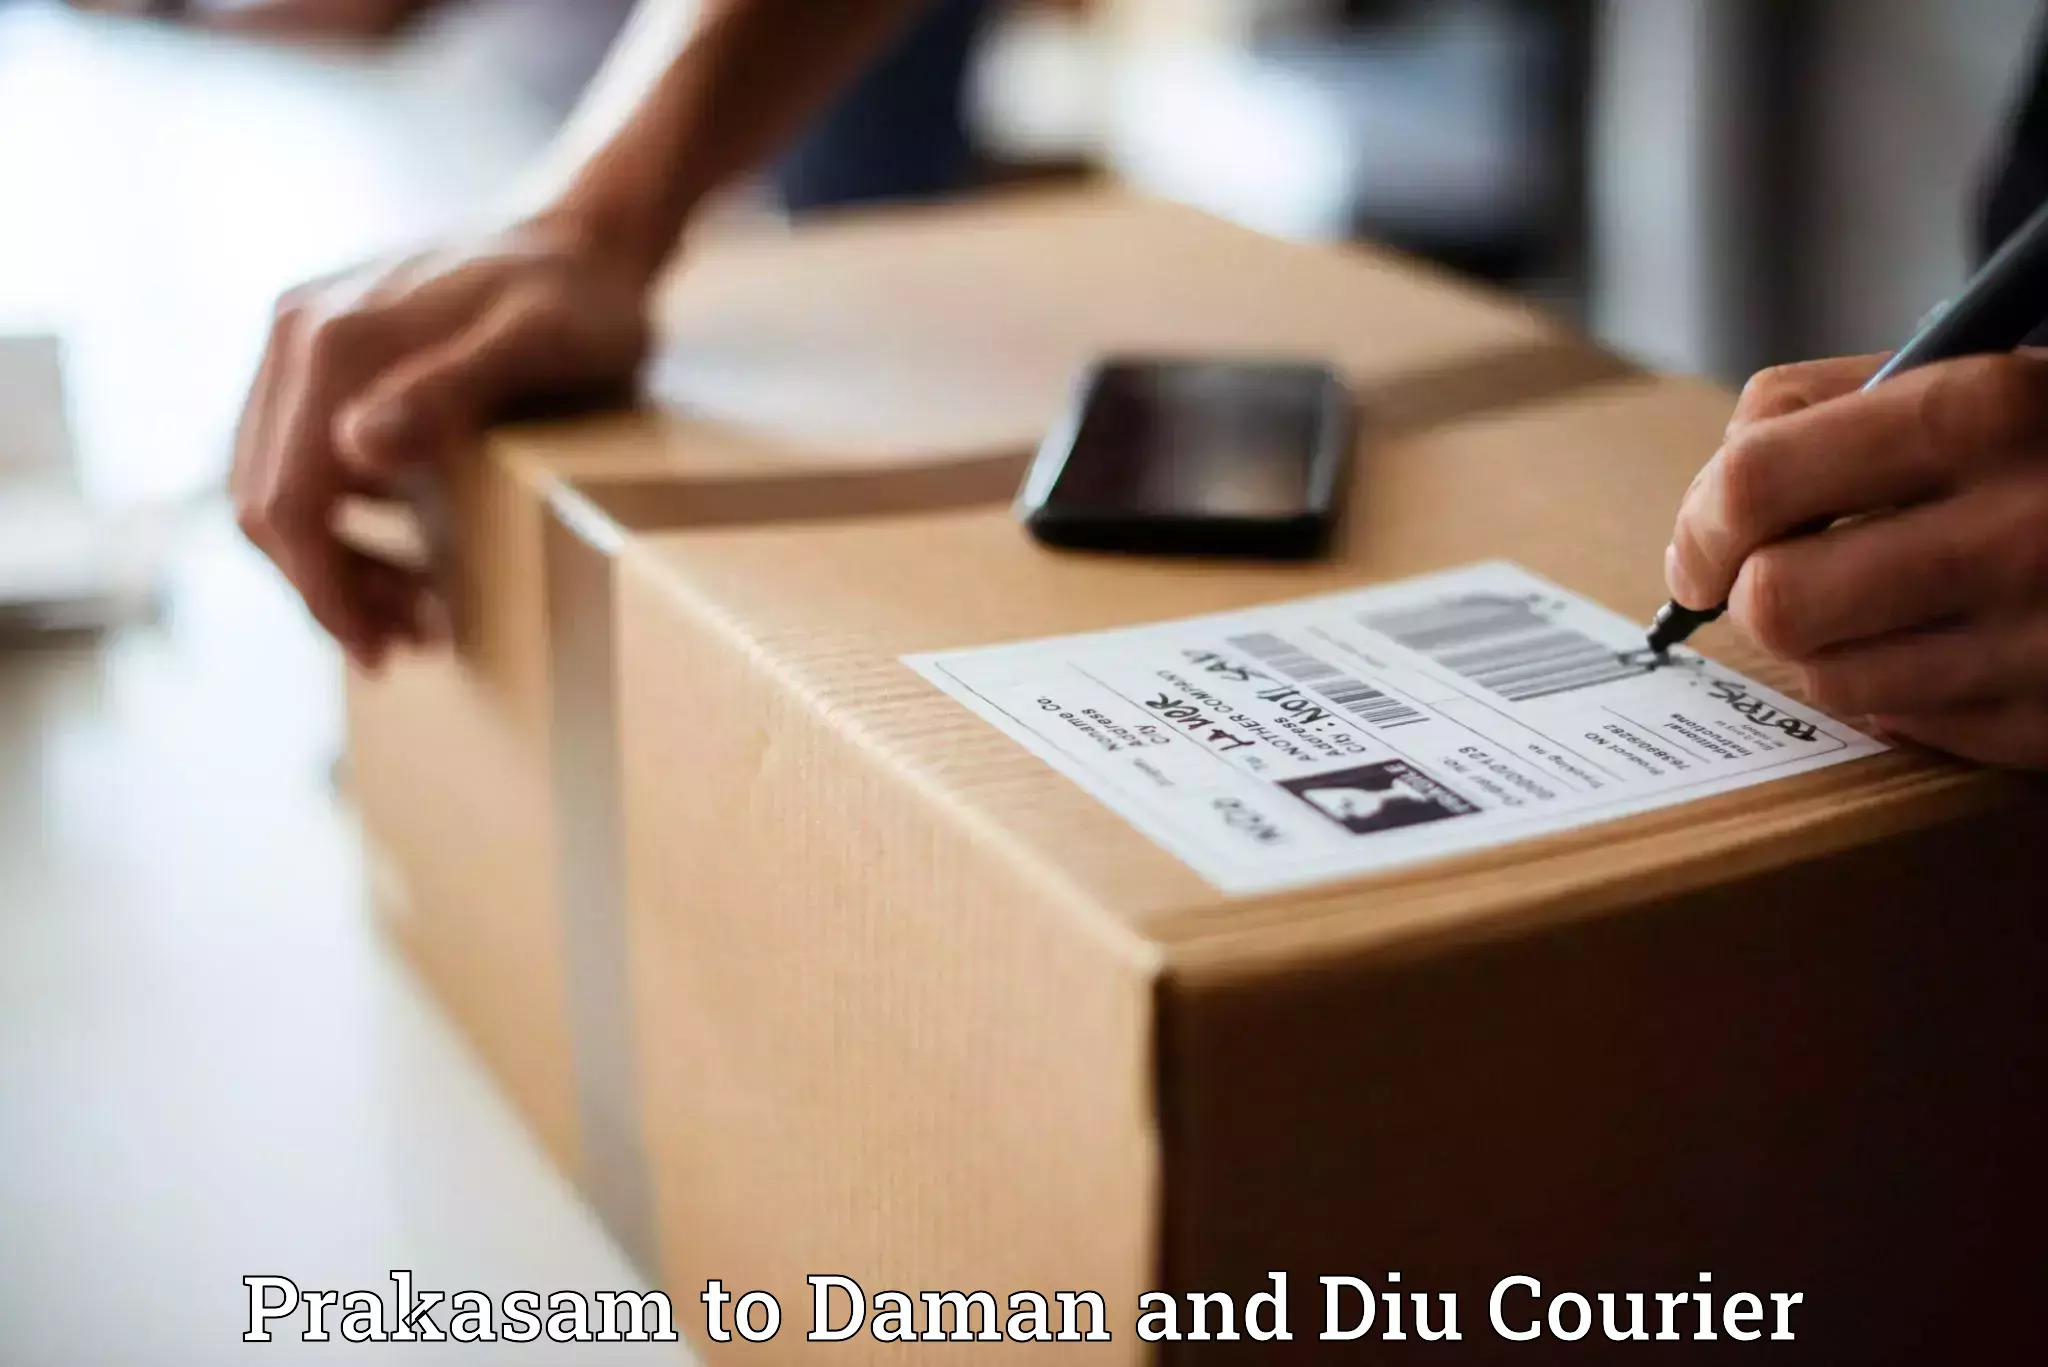 Doorstep delivery service Prakasam to Daman and Diu